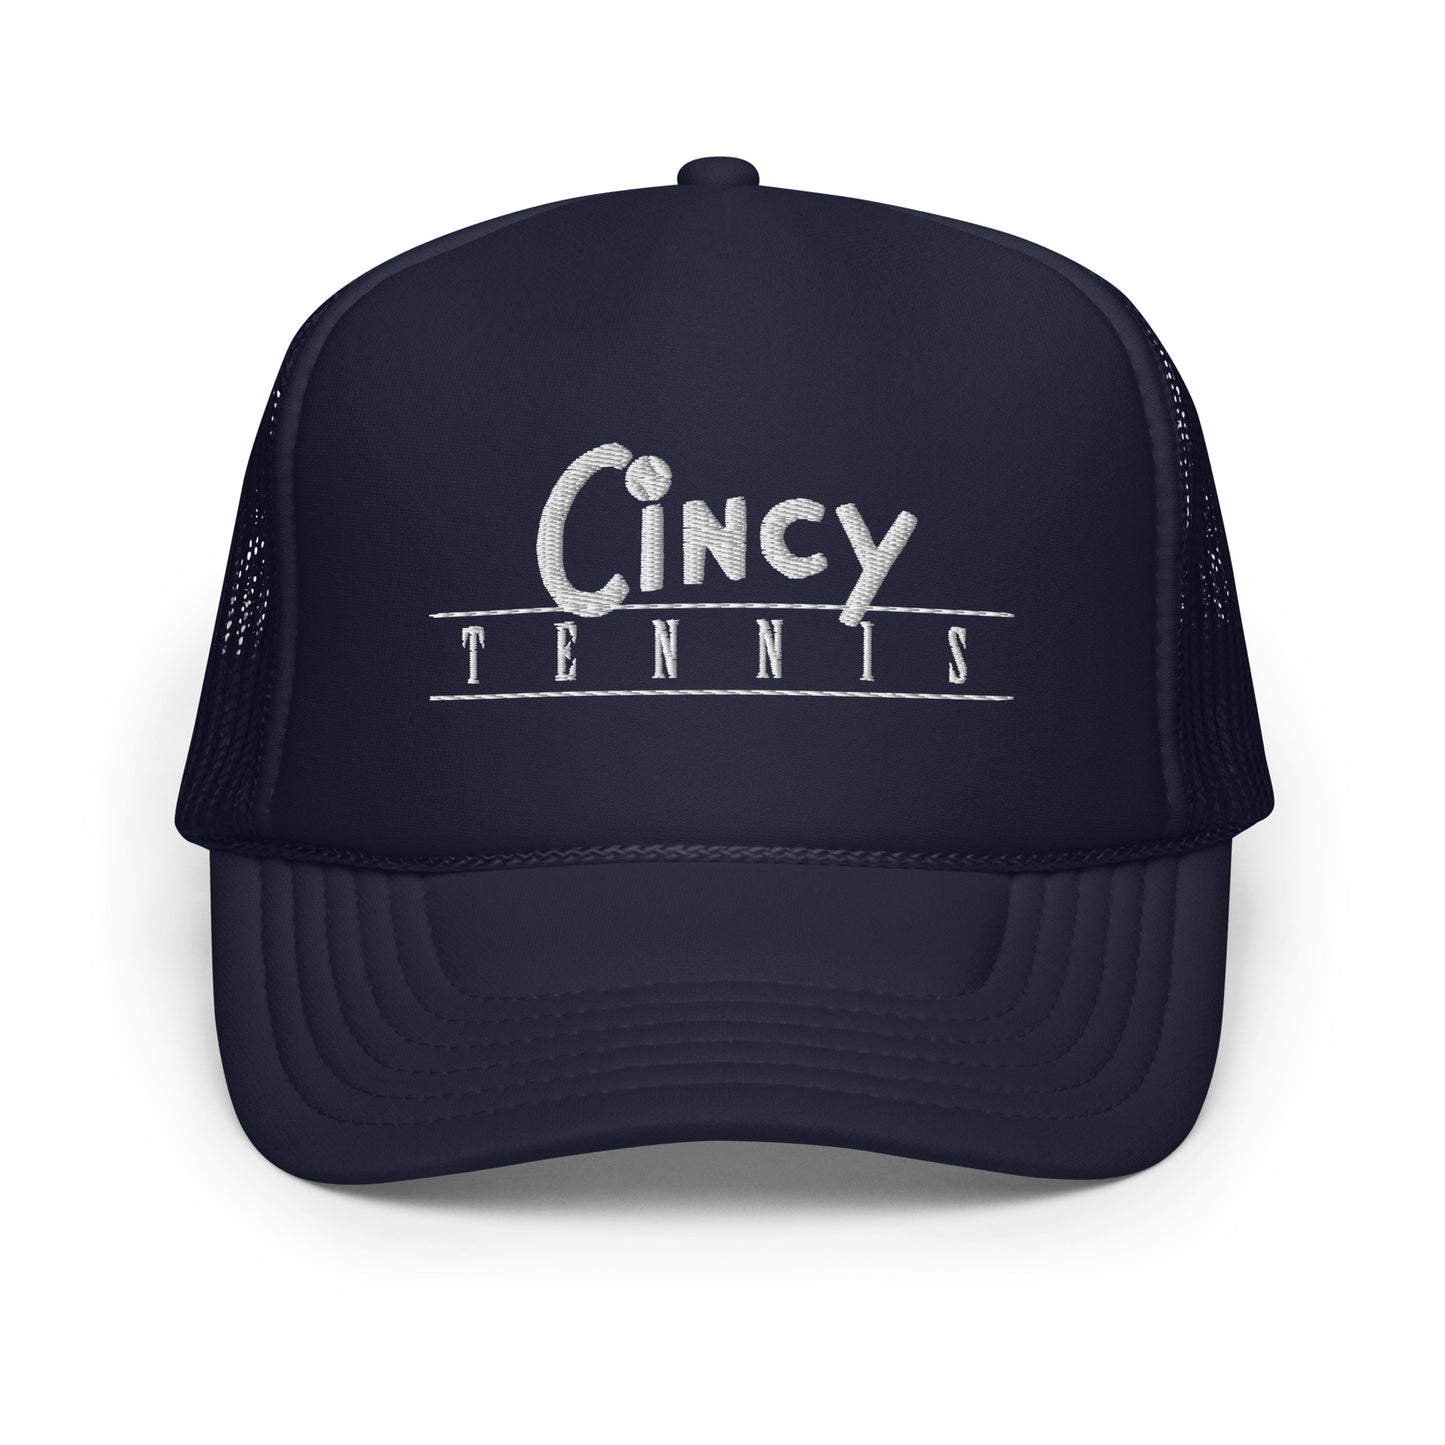 Cincy Tennis foam trucker hat